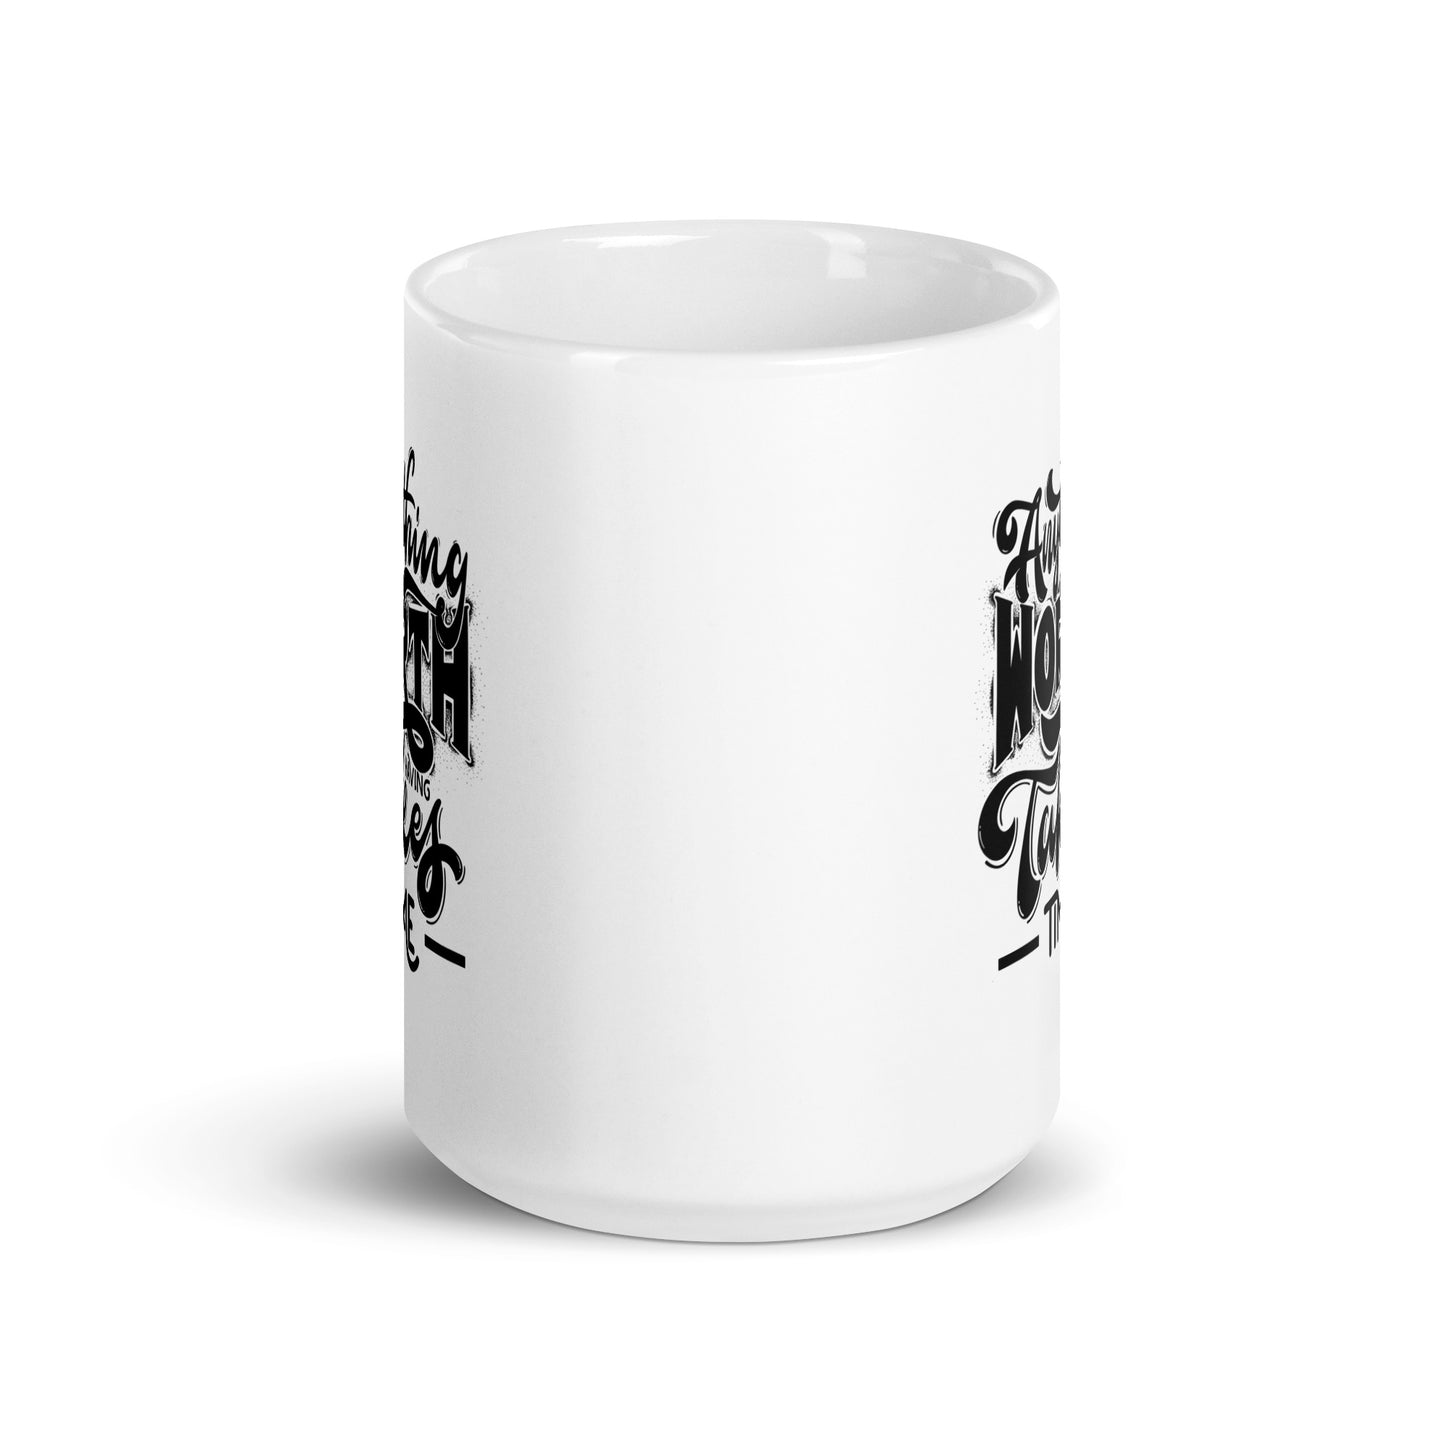 Anything Worth Having Takes Time White Ceramic Coffee Mug